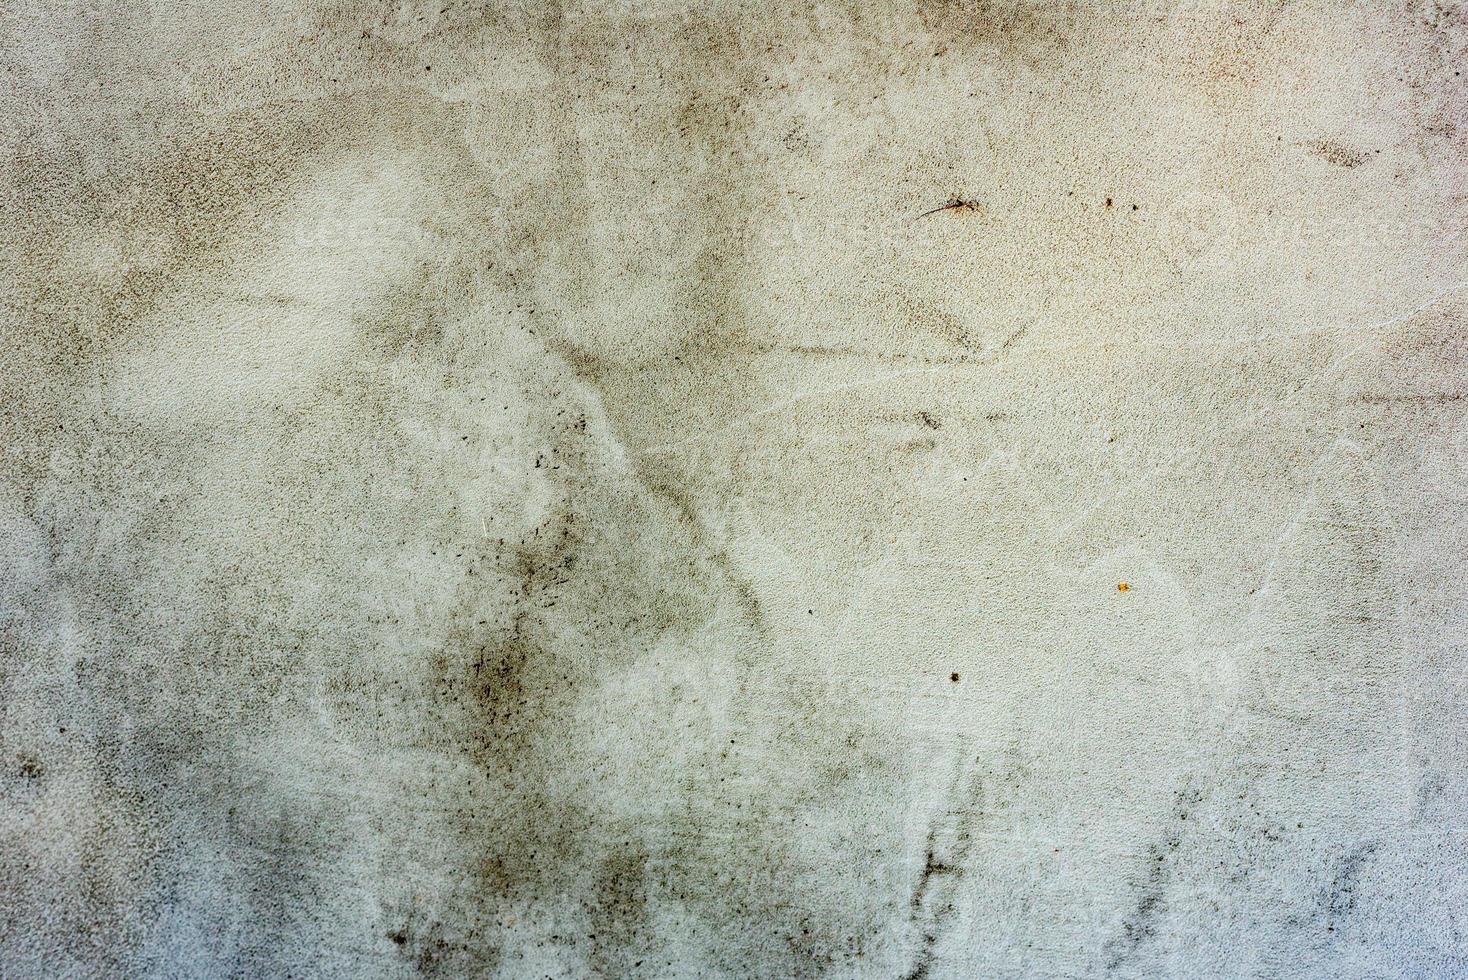 textura de una pared de hormigón con grietas y arañazos que se pueden utilizar como fondo foto